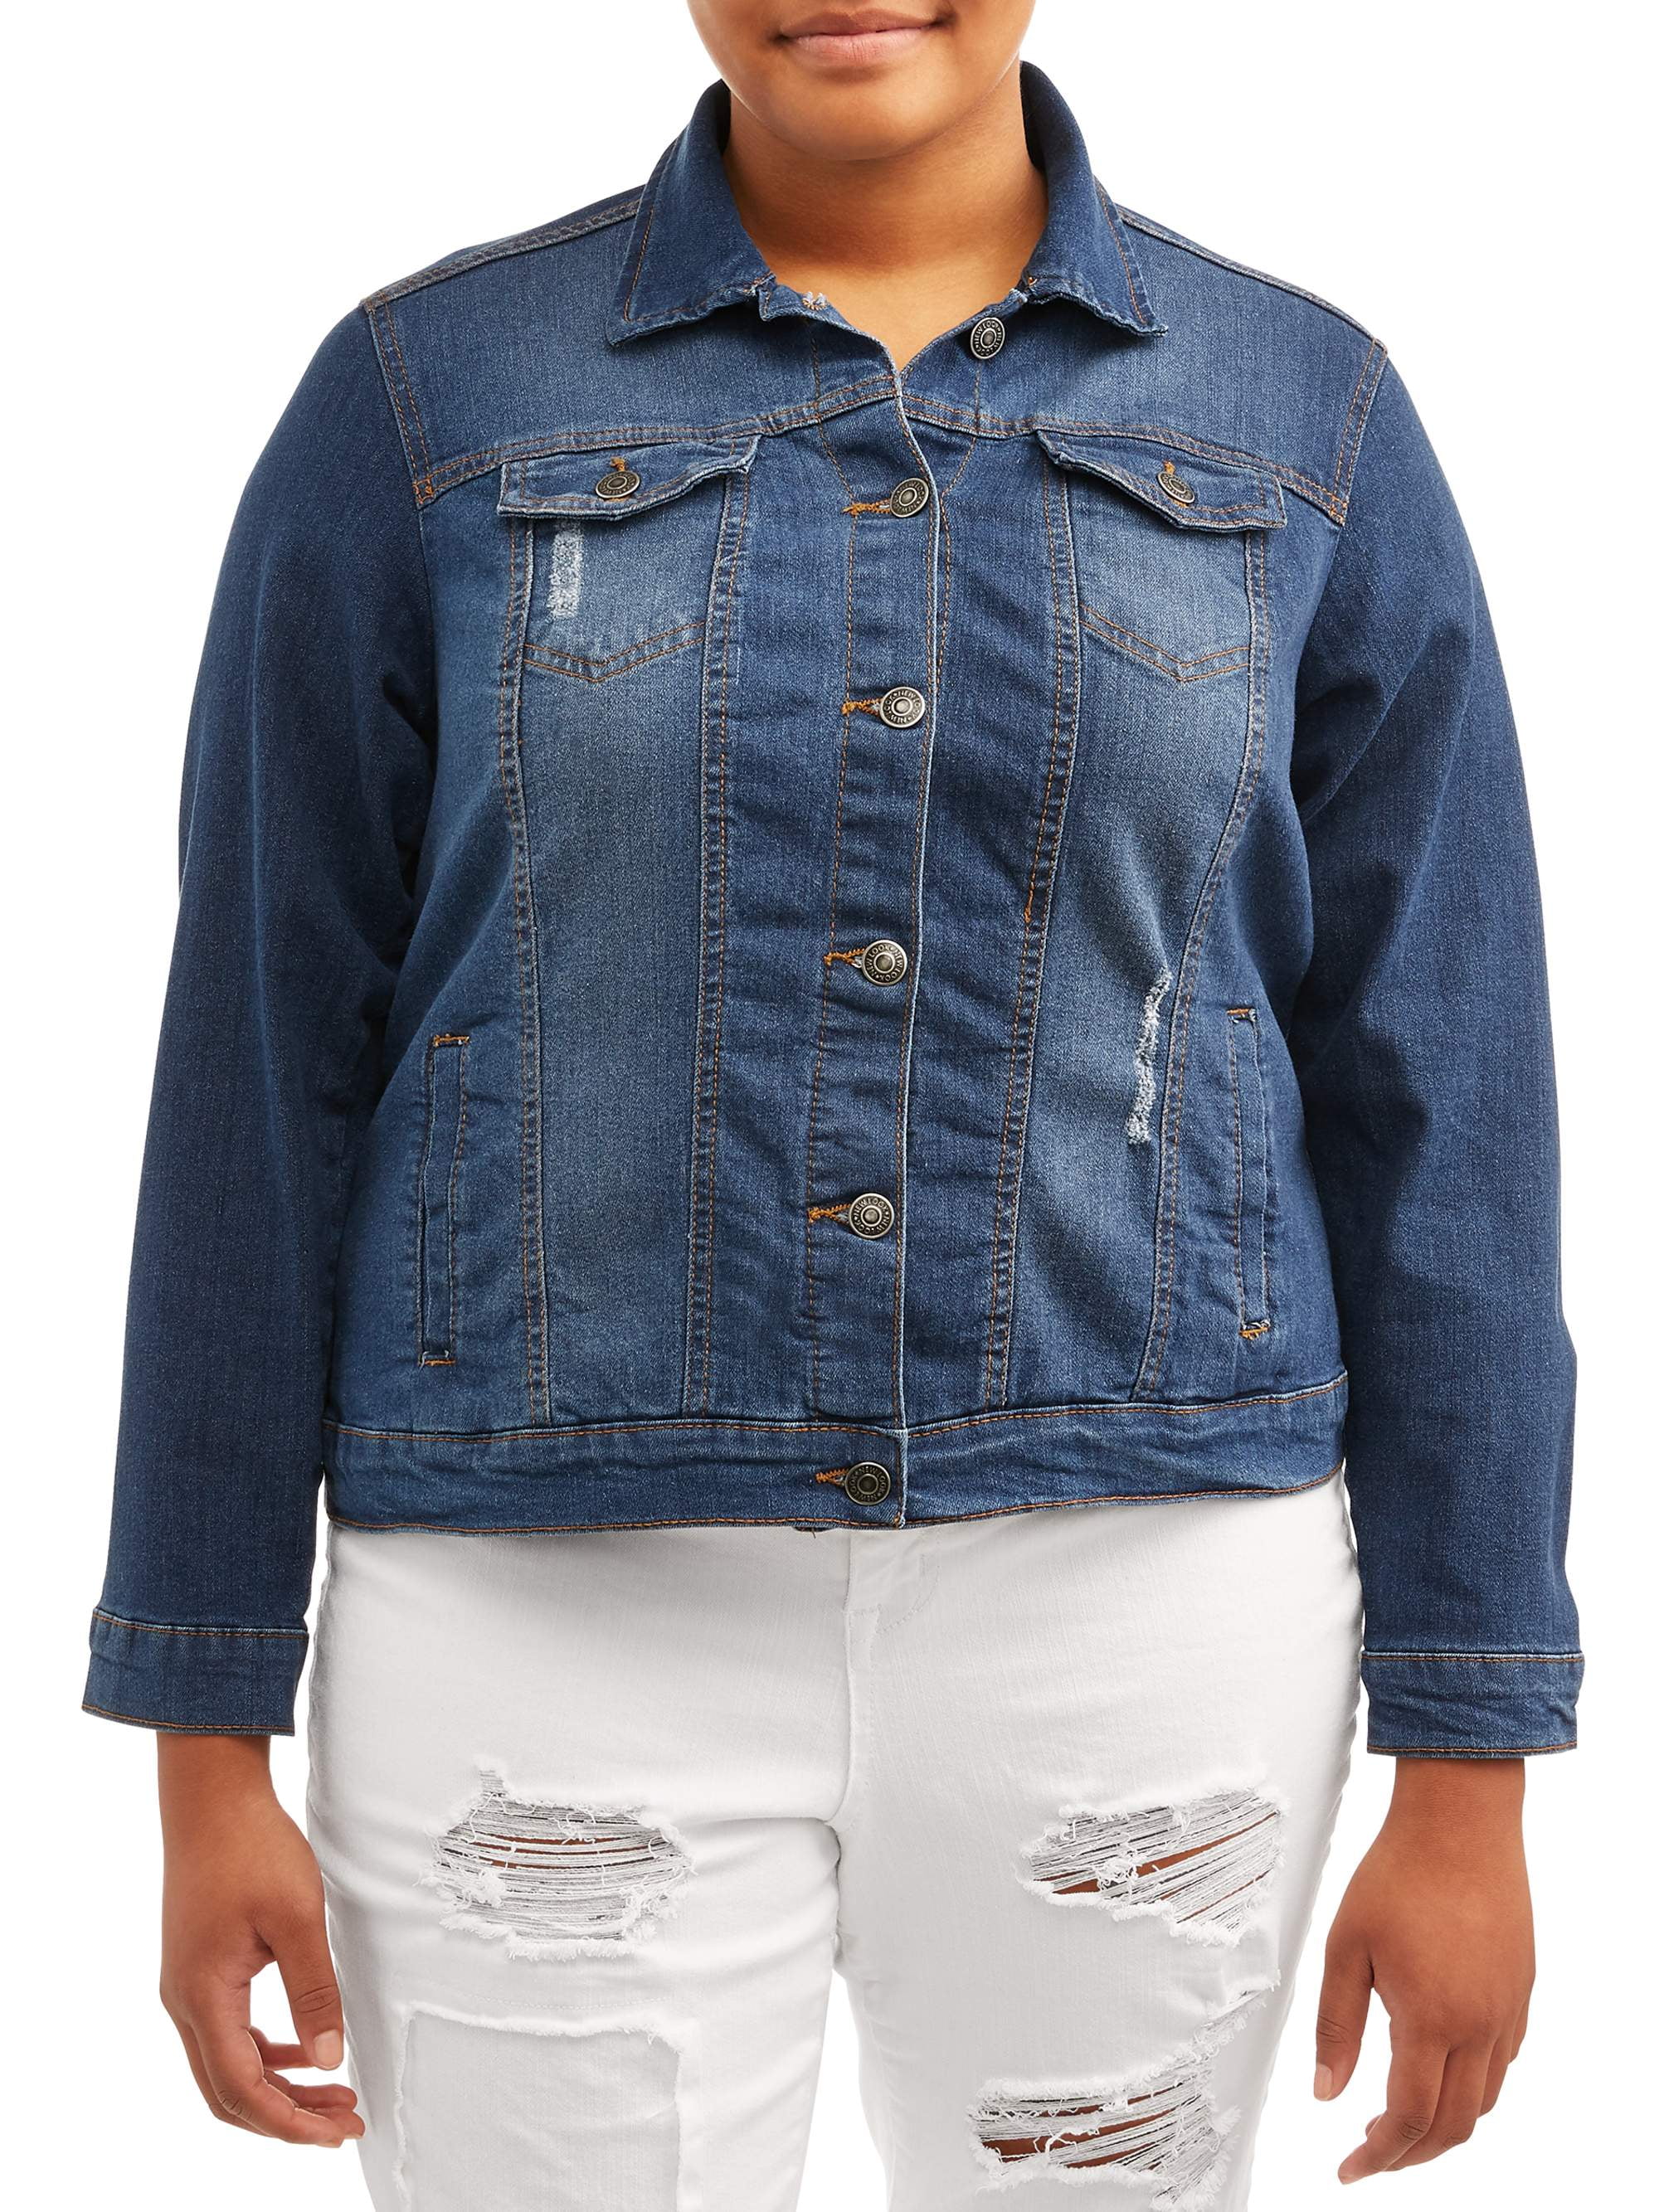 plus size distressed jean jacket